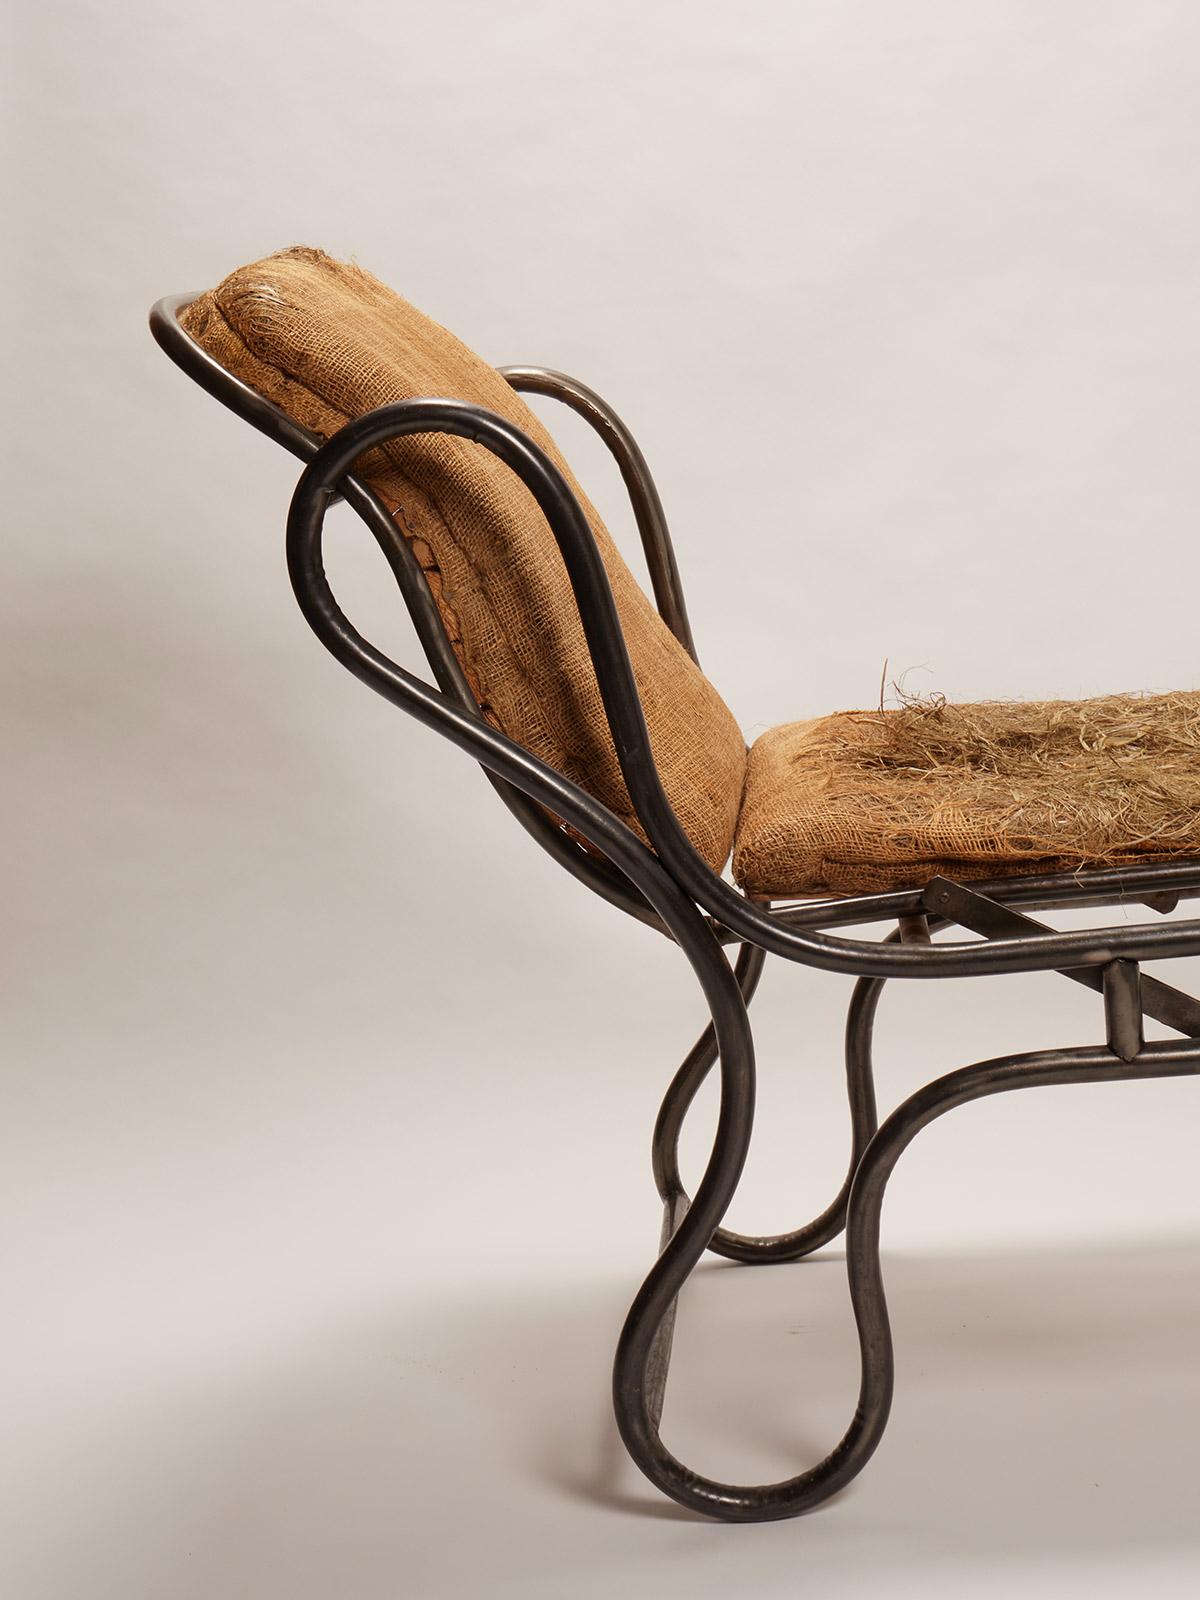 Languette de chaise réglable. Exemple très rare et inhabituel de conception d'une chaise-longue. La structure est faite de fer courbé. En soulevant le côté du pied de la chaise, le lit entier se lève. France, datant d'environ 1900.